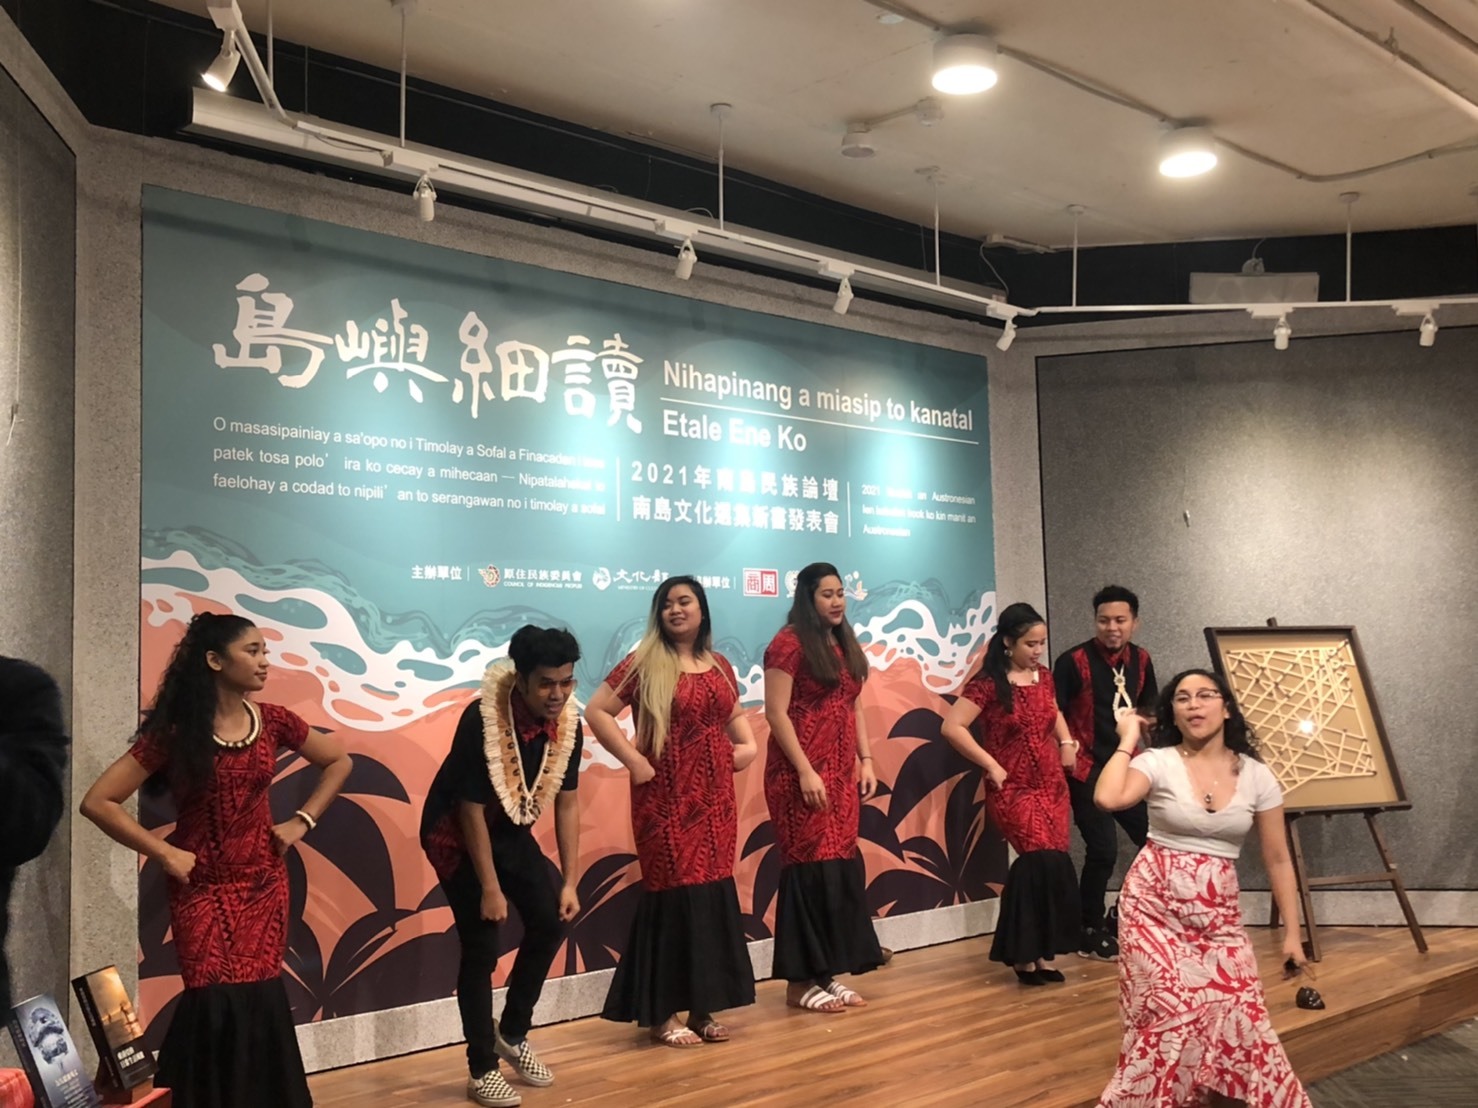 邀請到在臺灣念書的馬紹爾群島共和國學生跳舞